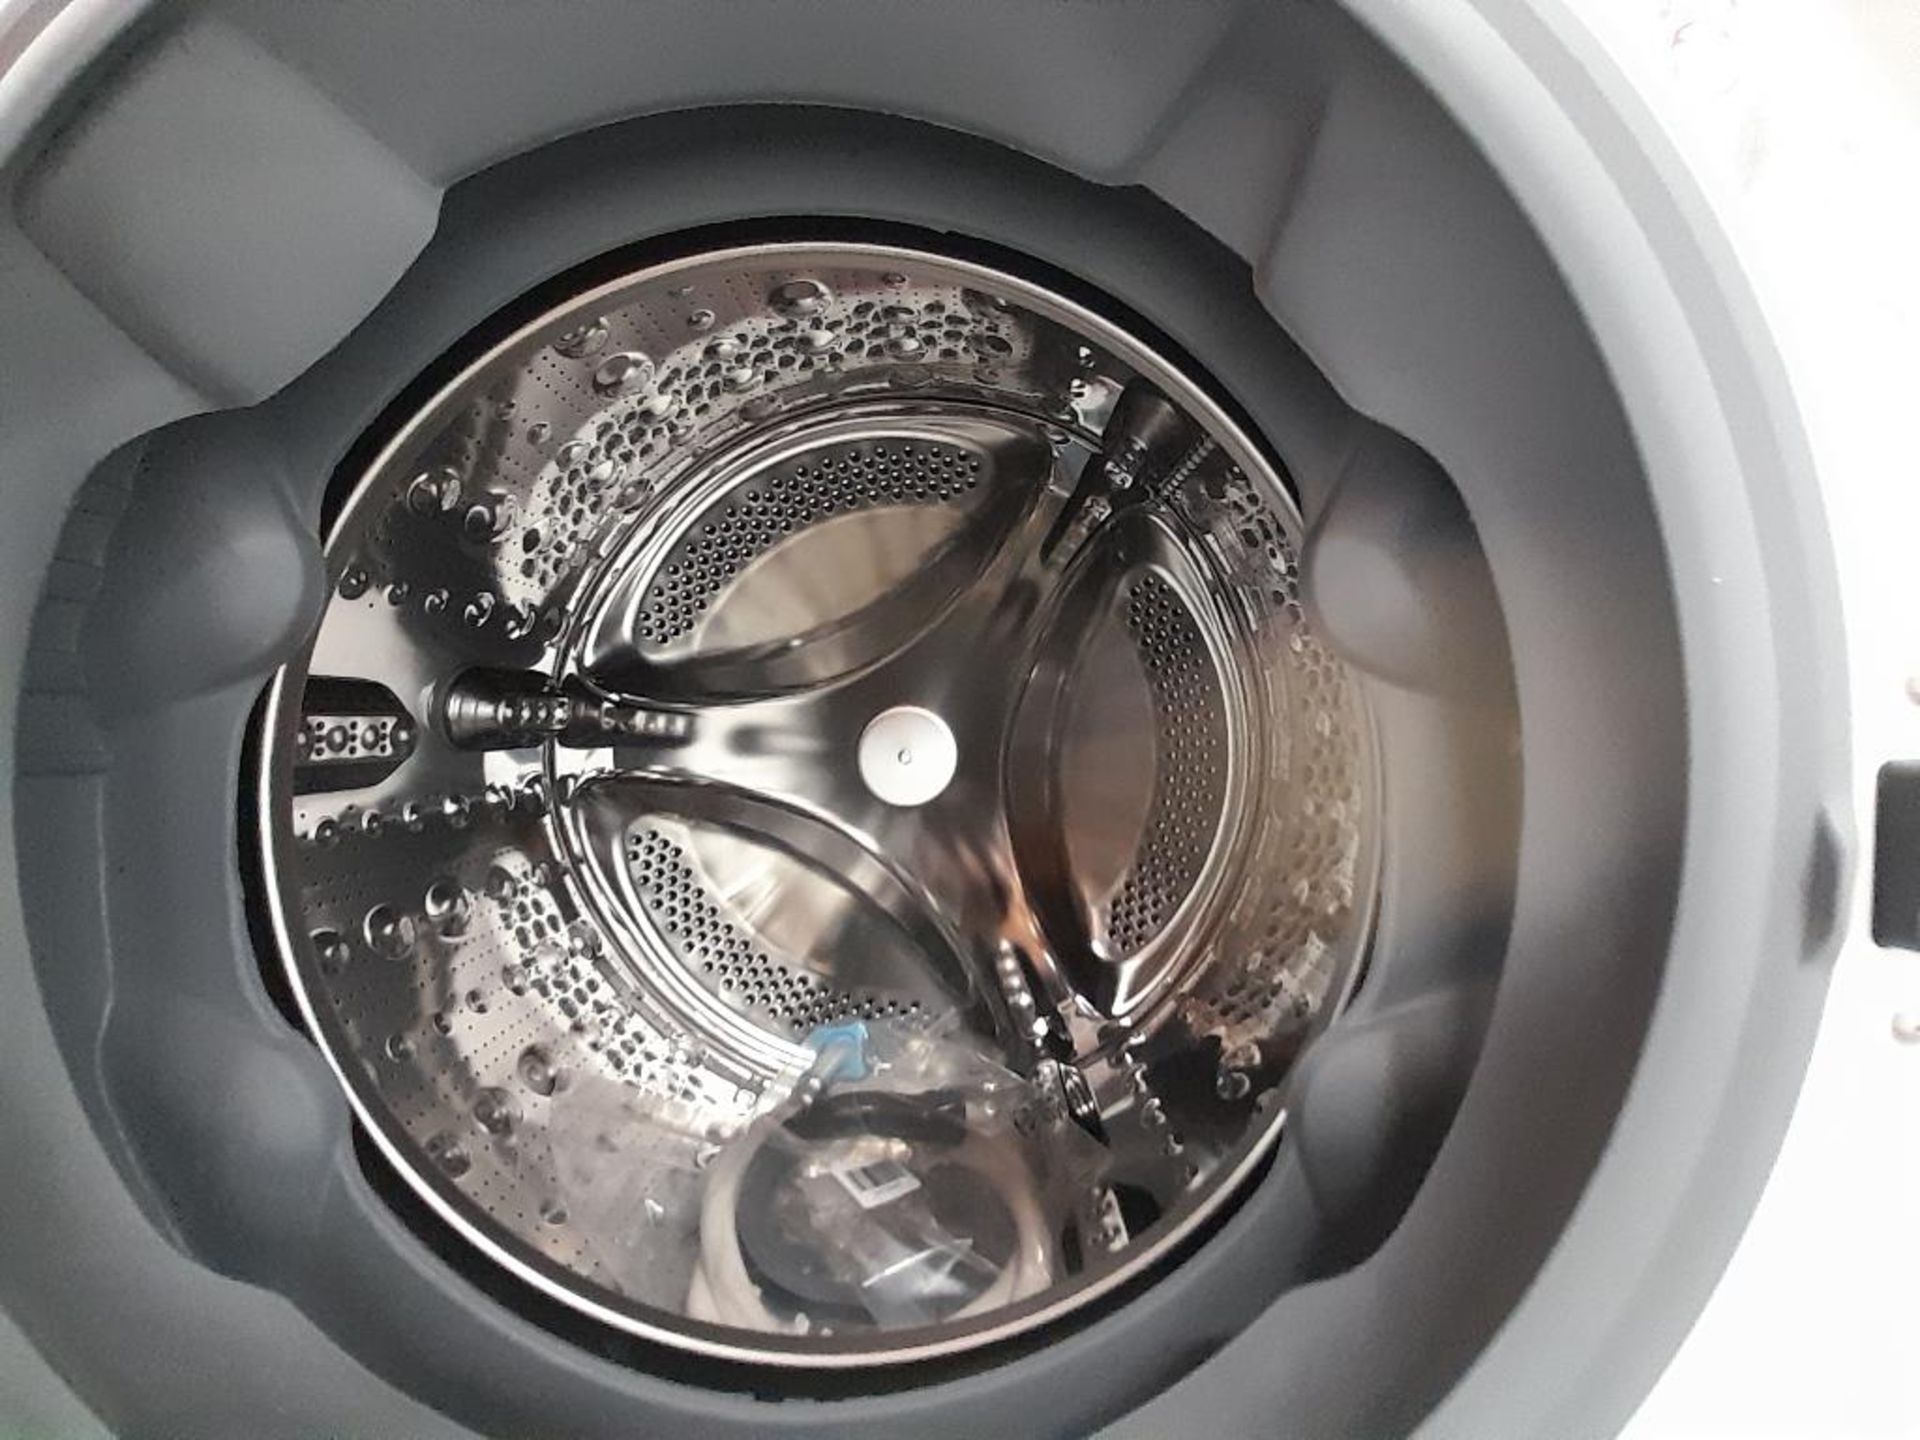 Lote de 2 lavadoras Contiene: 1 Lavasecadora de 12/5 KG Marca SAMSUNG, Modelo 04DBEAX, Serie 00036N - Image 5 of 6